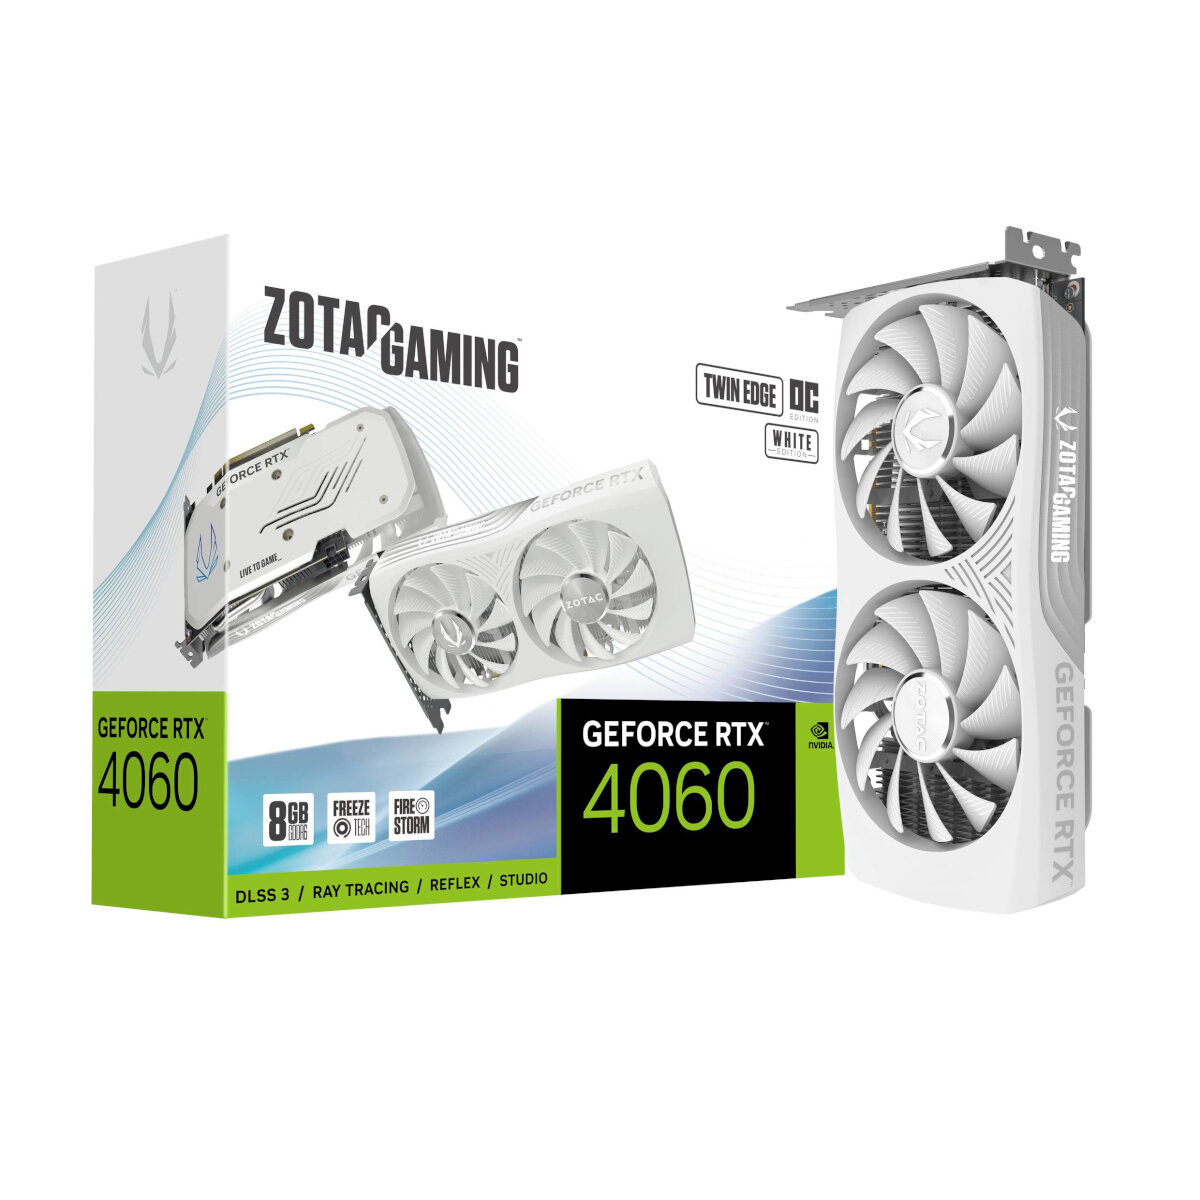 ZOTAC GAMING GeForce RTX 4060 Twin Edge OC White Edition - 8GB GDDR6, 1x HDMI, 3x DP von Zotac